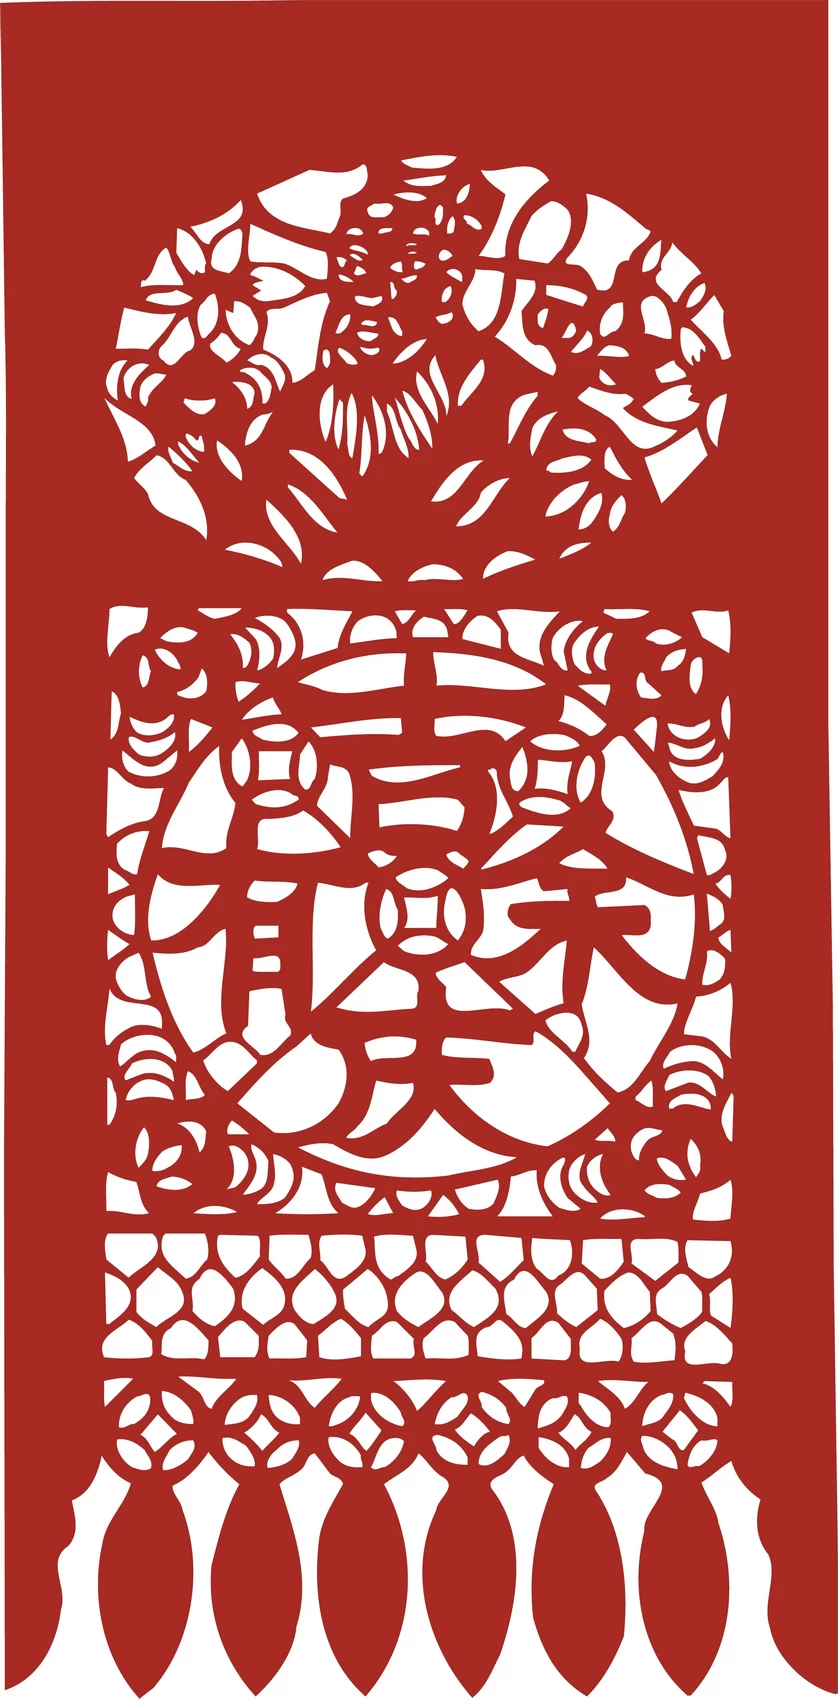 中国风中式传统喜庆民俗人物动物窗花剪纸插画边框AI矢量PNG素材【1977】